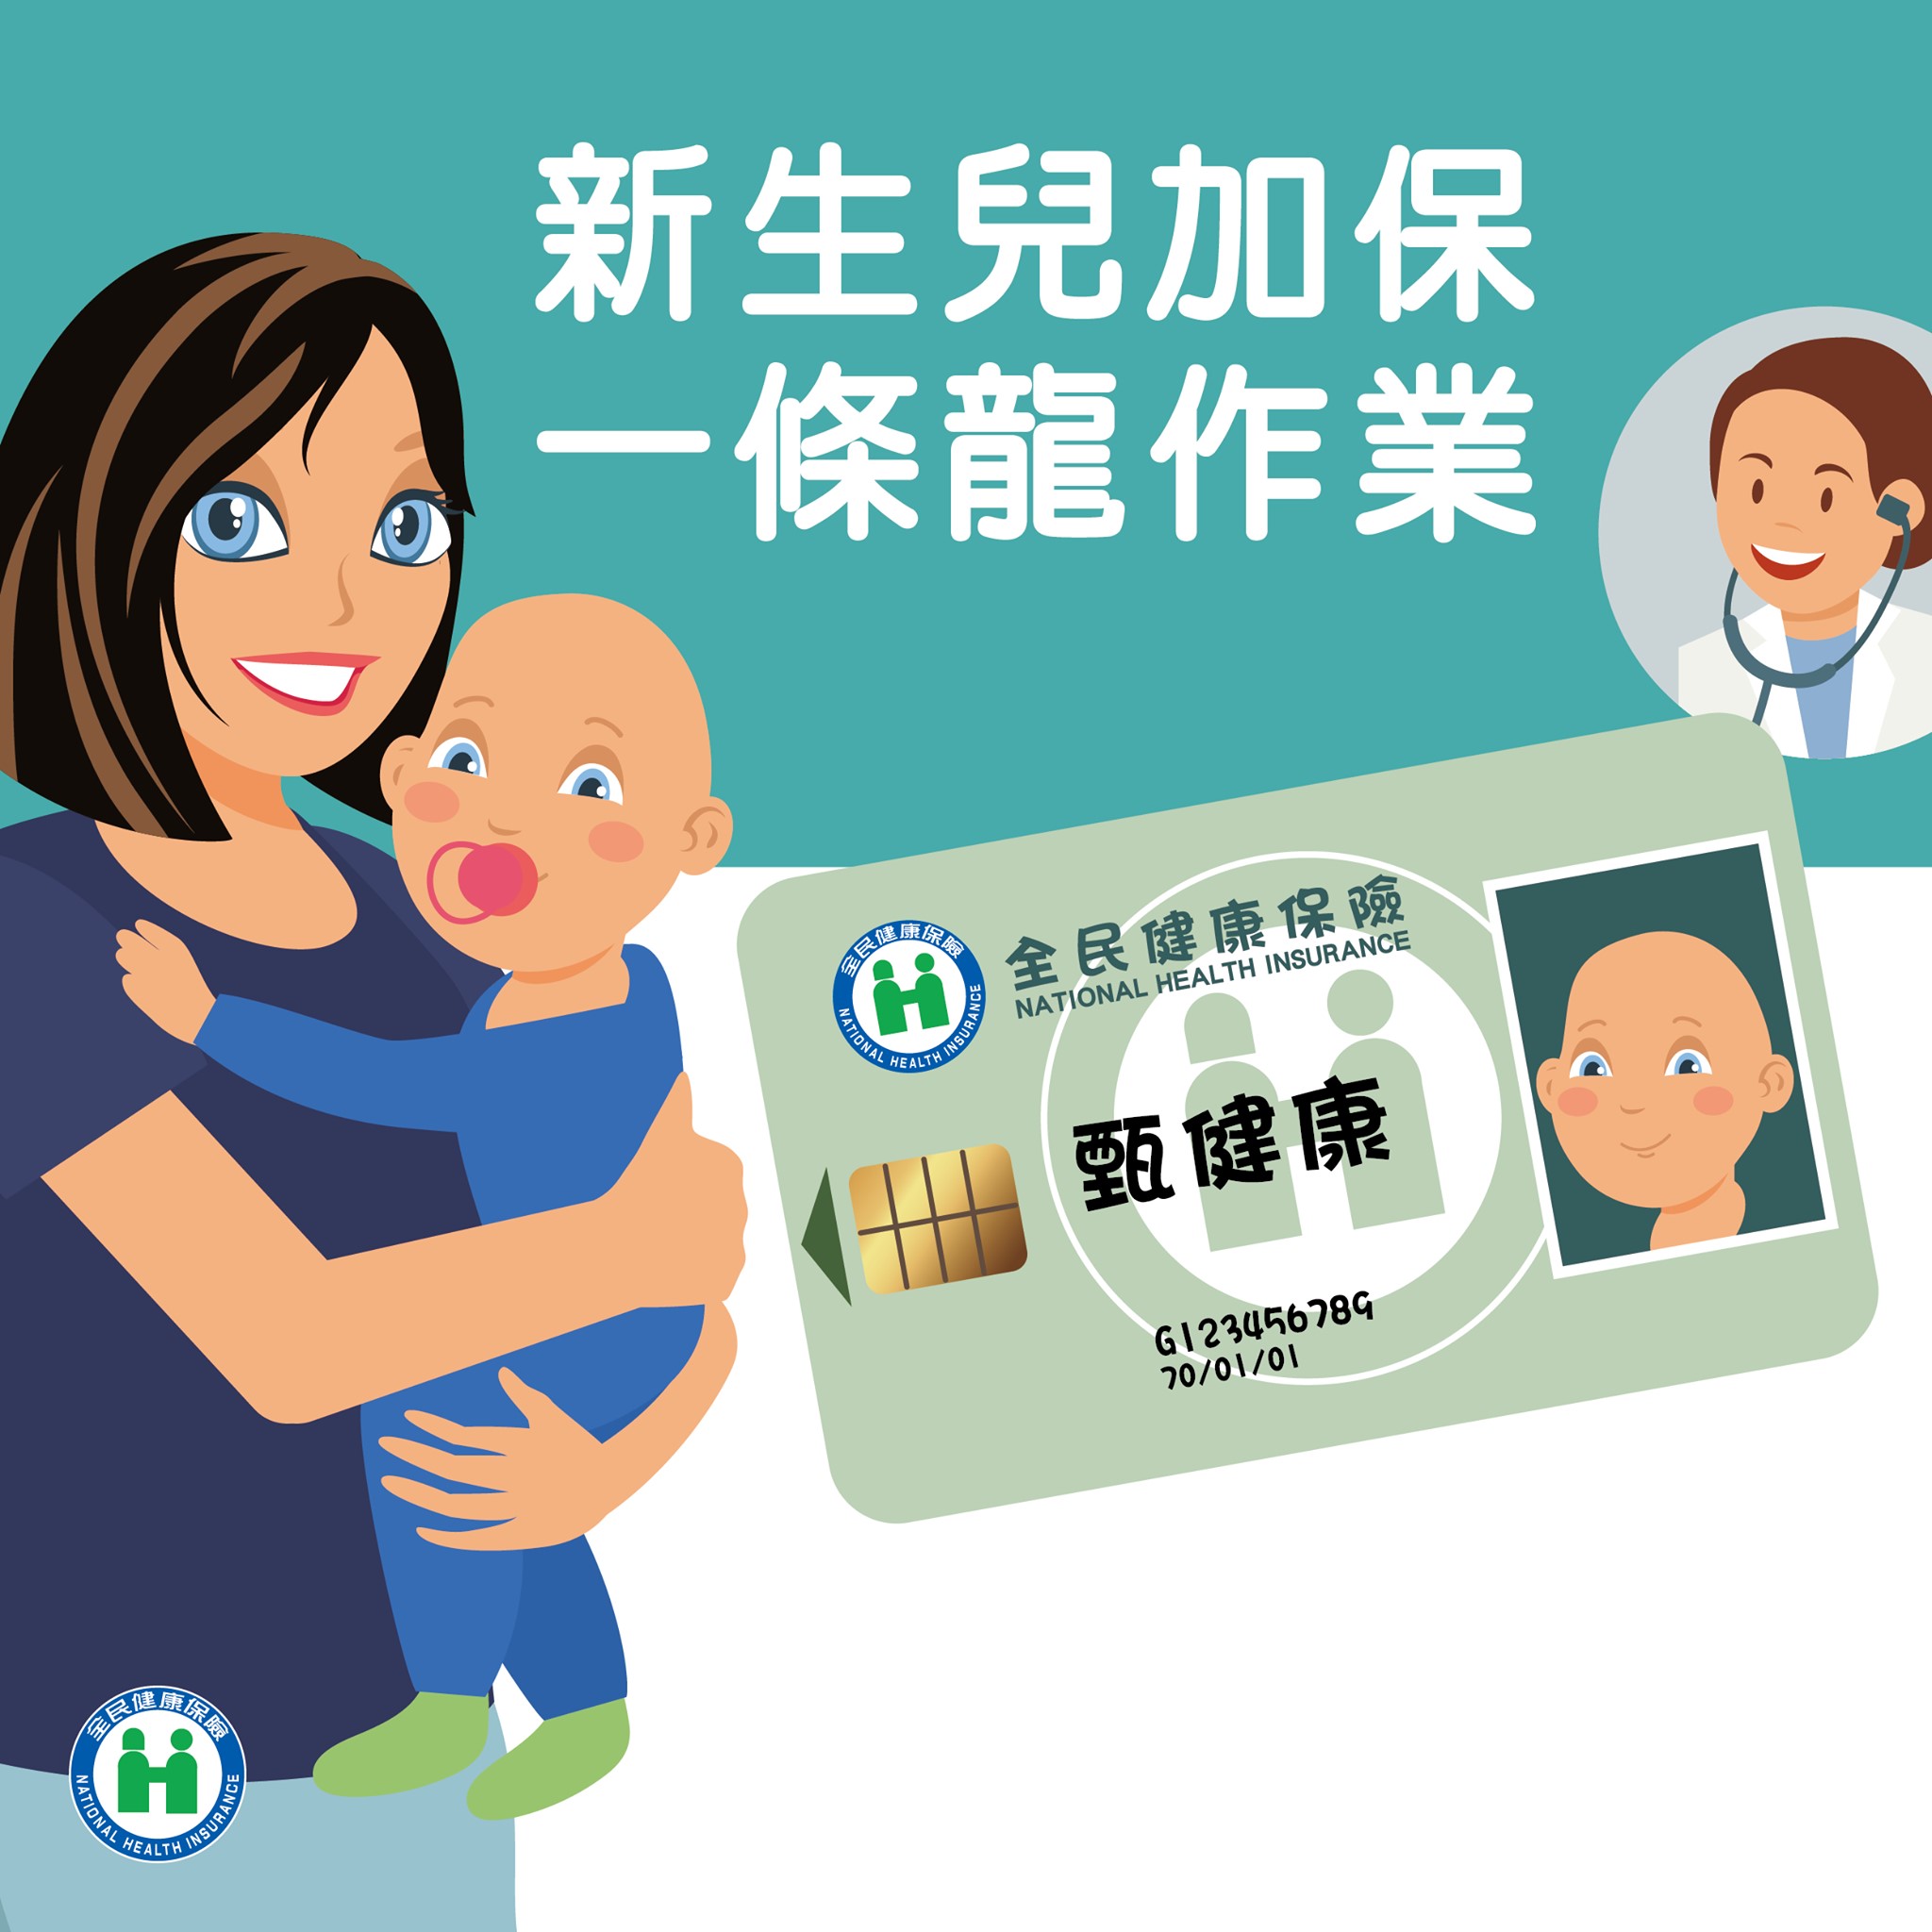 完成新生嬰兒出生通報戶籍出生登記及申請參加健保與健保卡之跨機關單一窗口